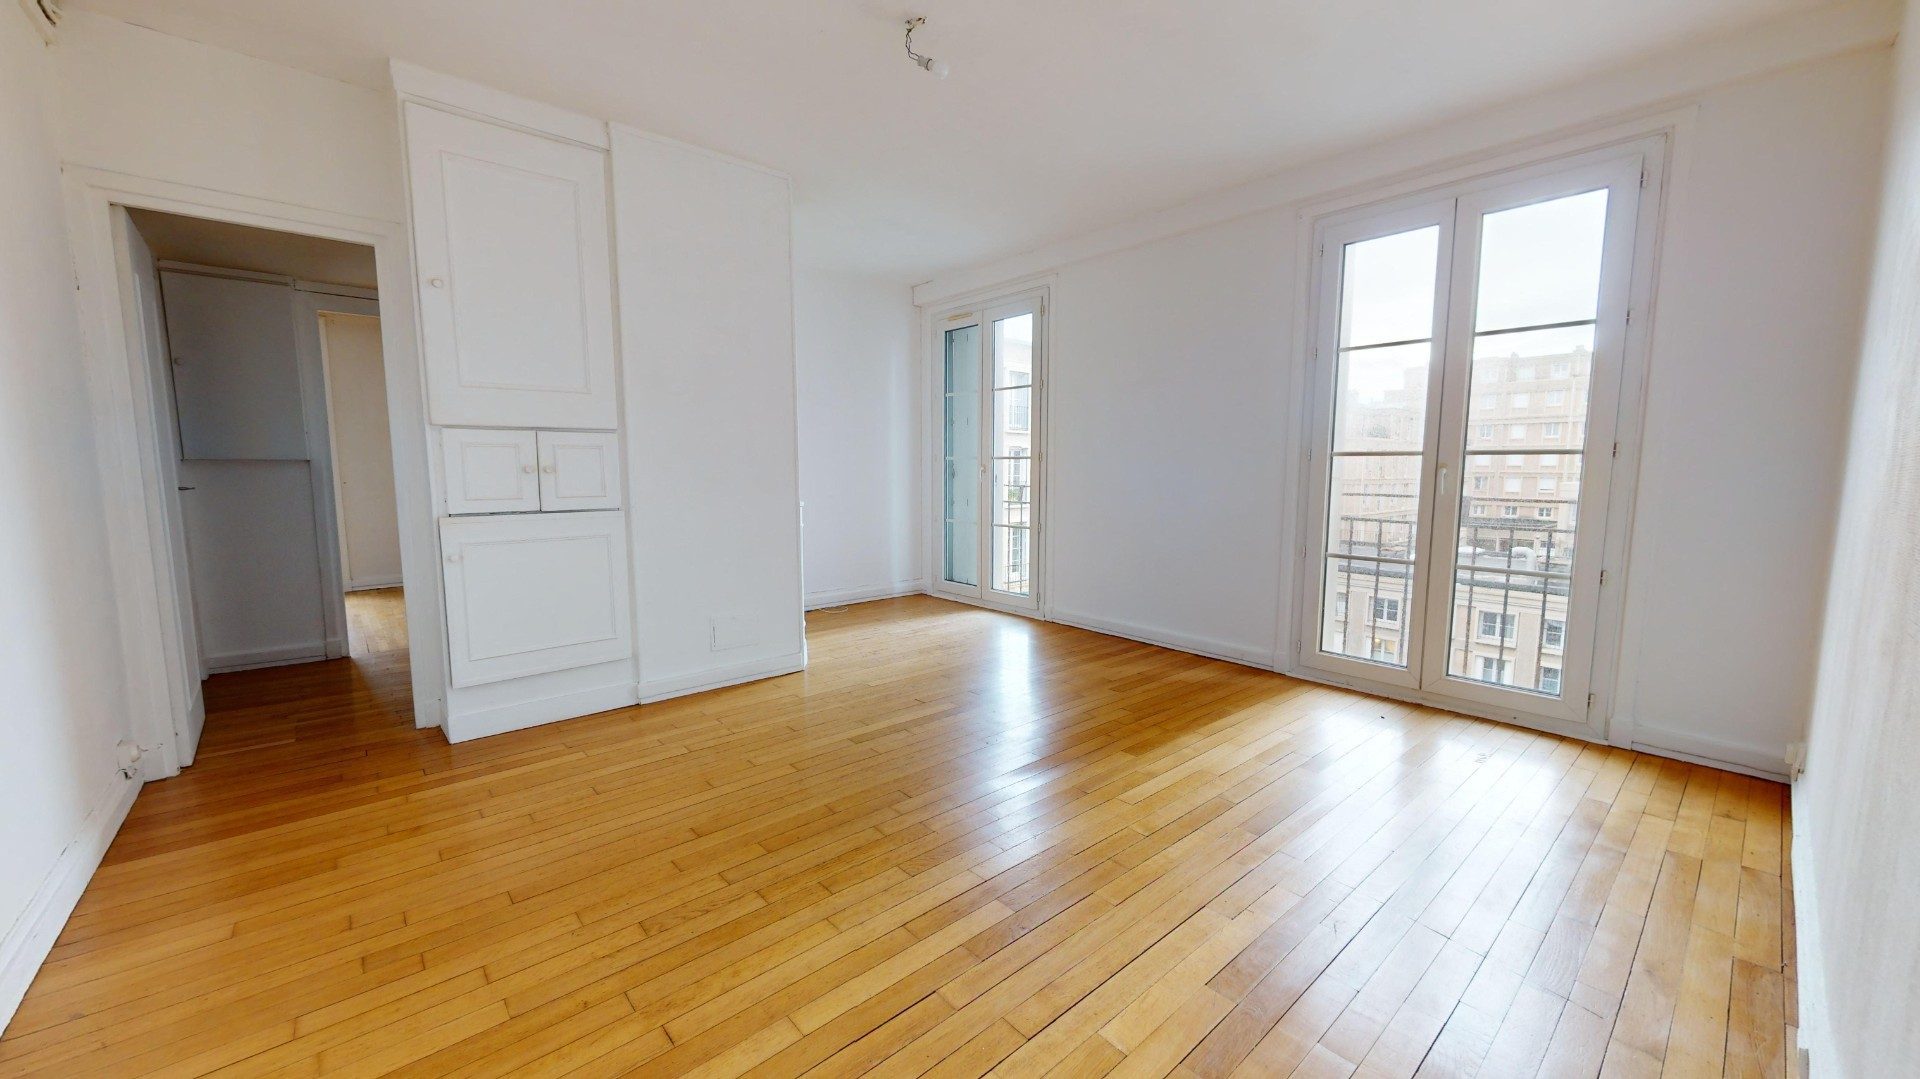 A vendre Appartement type F3 Le Havre 799-2-JULLIENALLIX